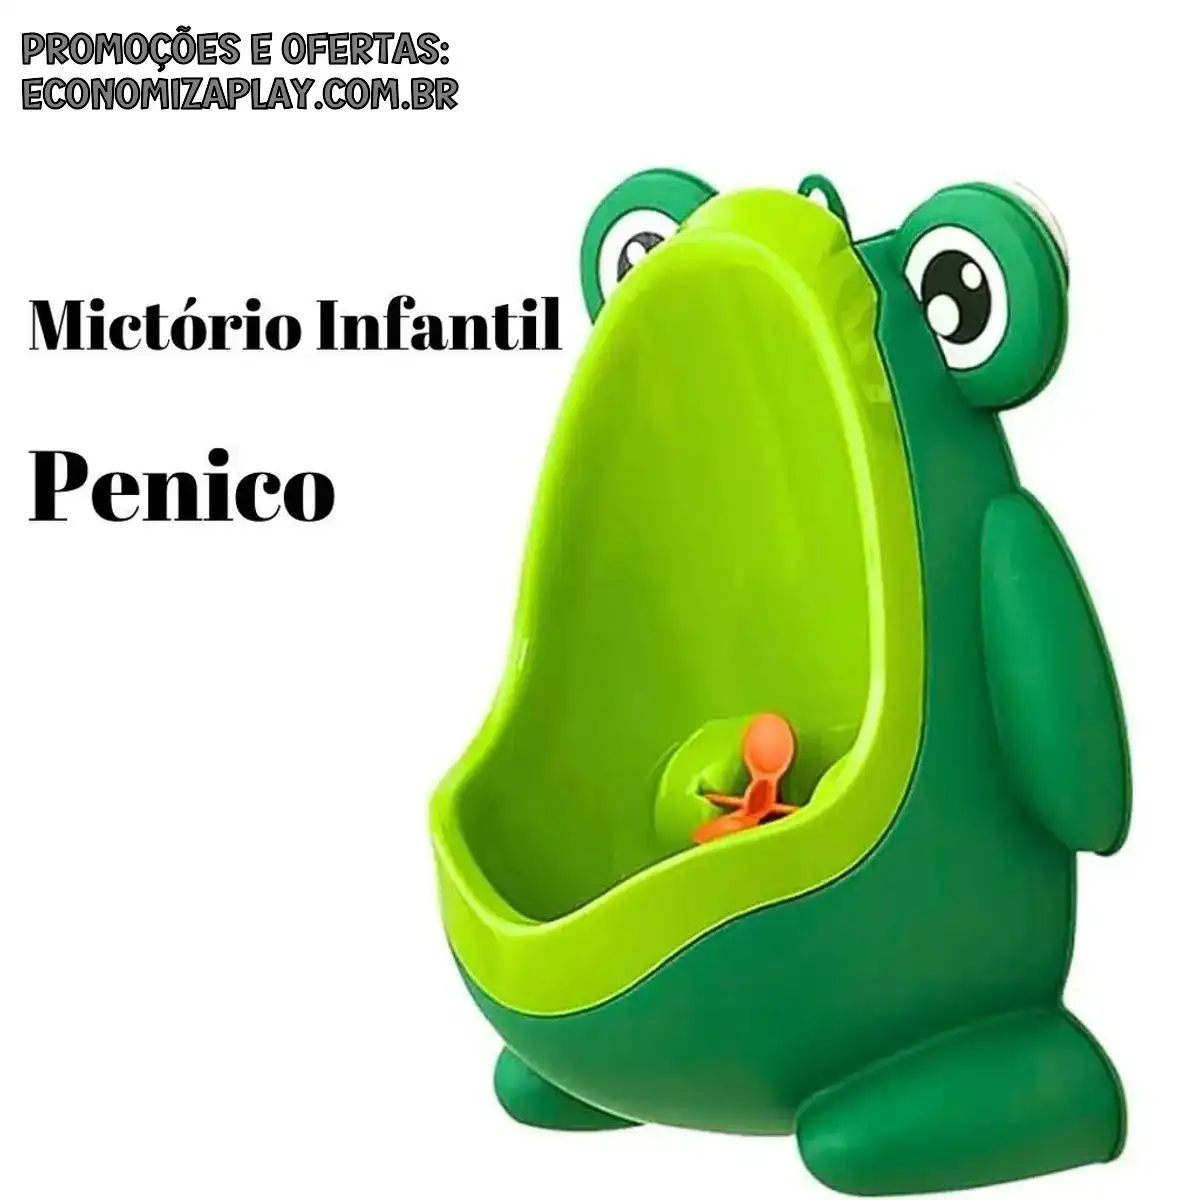 Pinico Mictório Infantil De Sapinho Menino Bebe Penico Com Alvo Giratório Ventosa Desfraude Criança